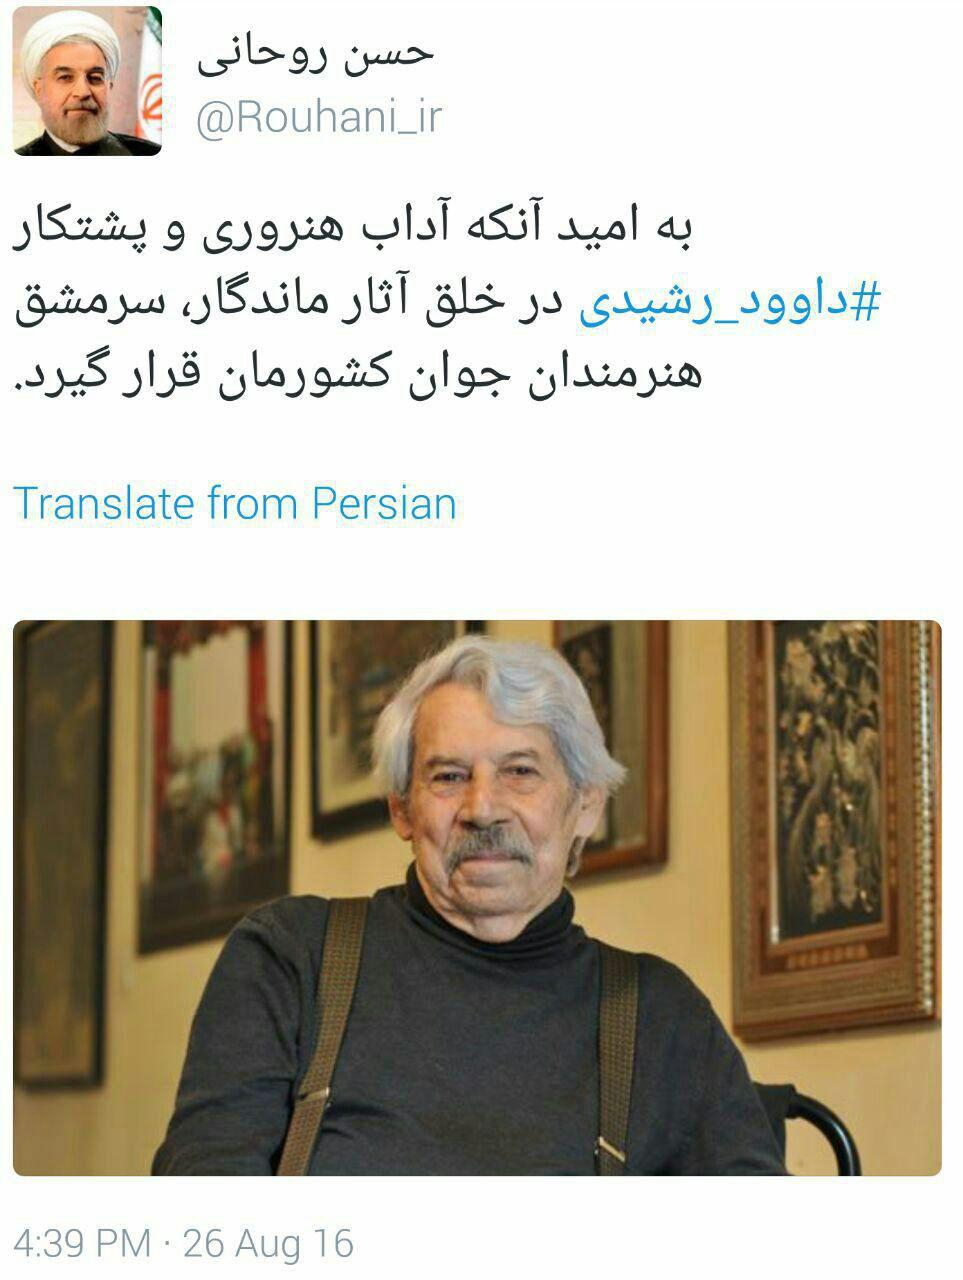 توییت حسن روحانی رئيس جمهوری در پی درگذشت داوود رشیدی